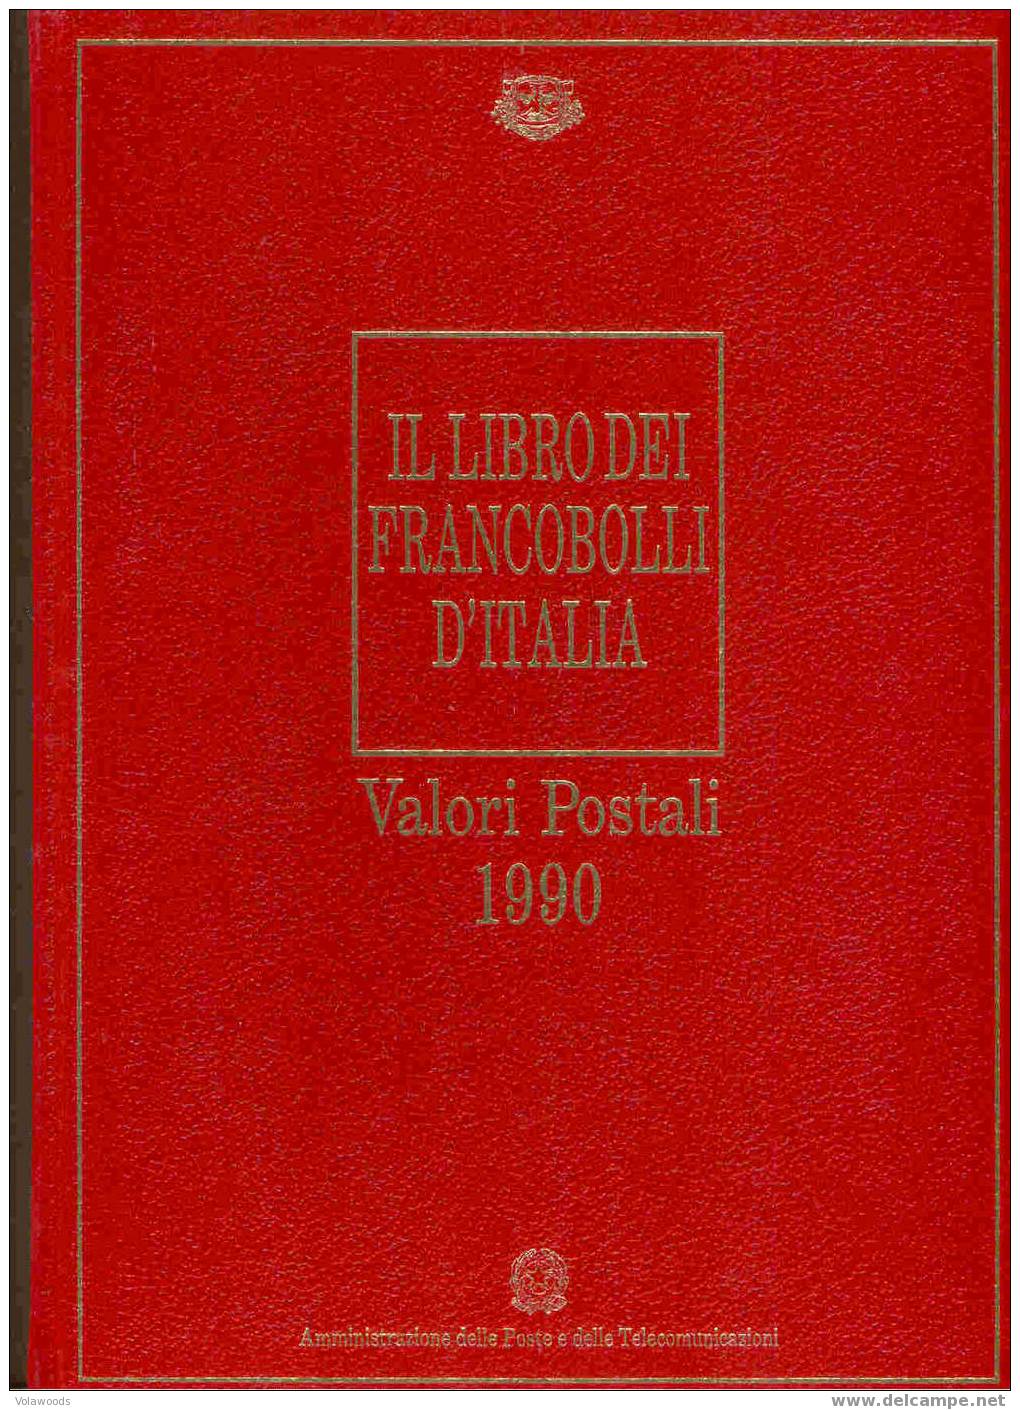 Italia - Libro Dei Francobolli 1990 - Annata Completa Francobolli/libretti/foglietti - Full Years